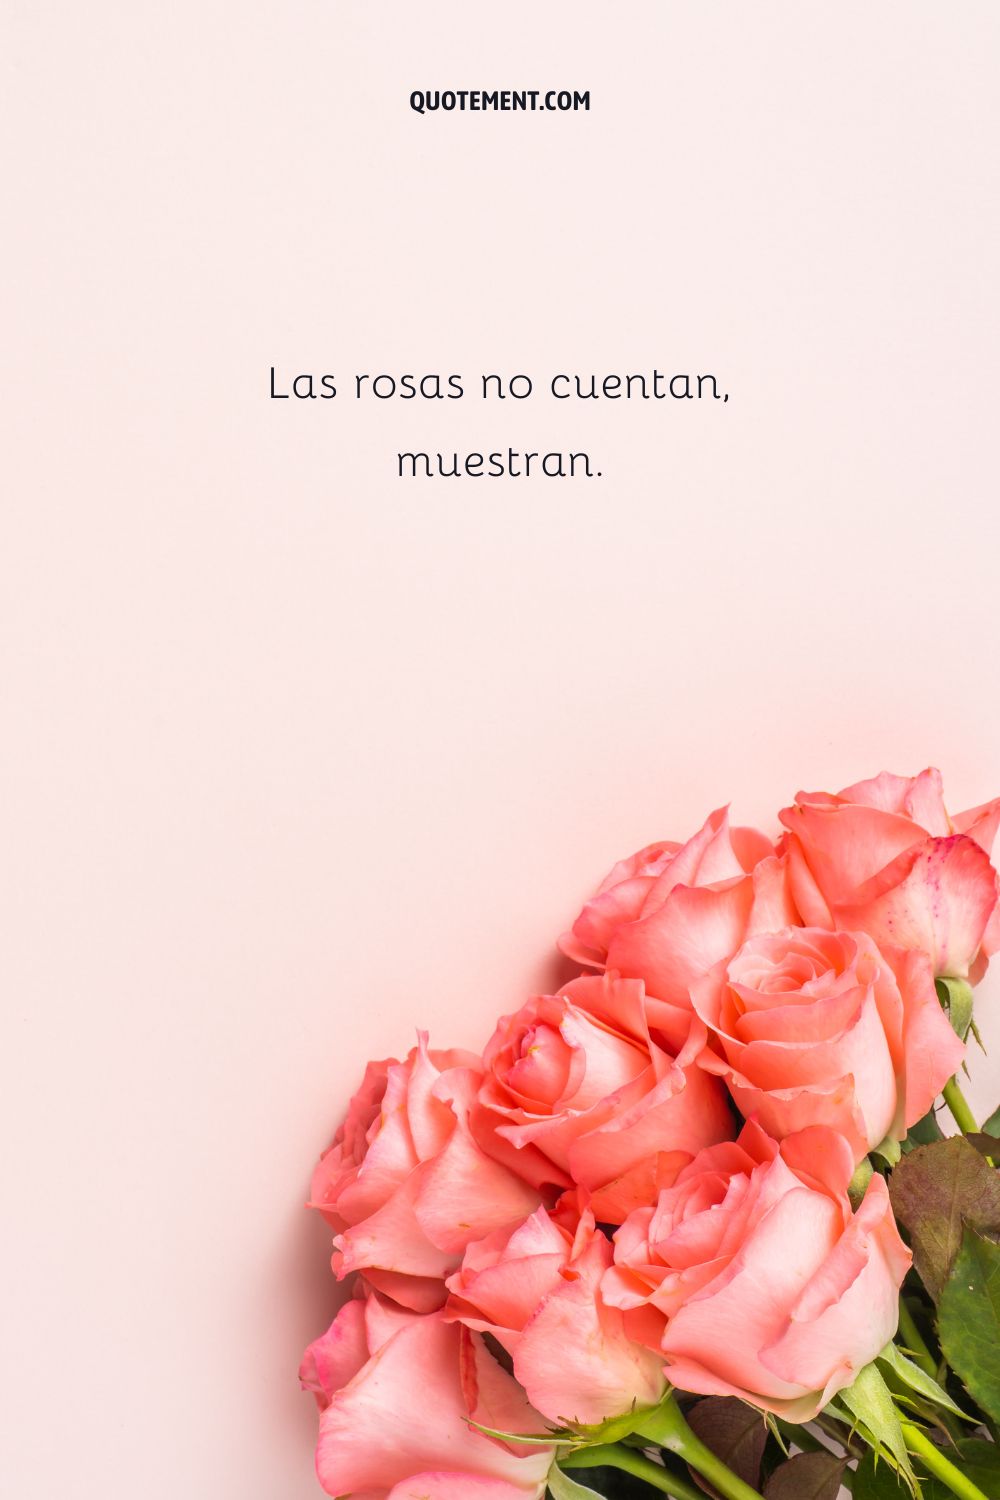 Las rosas no cuentan, muestran.